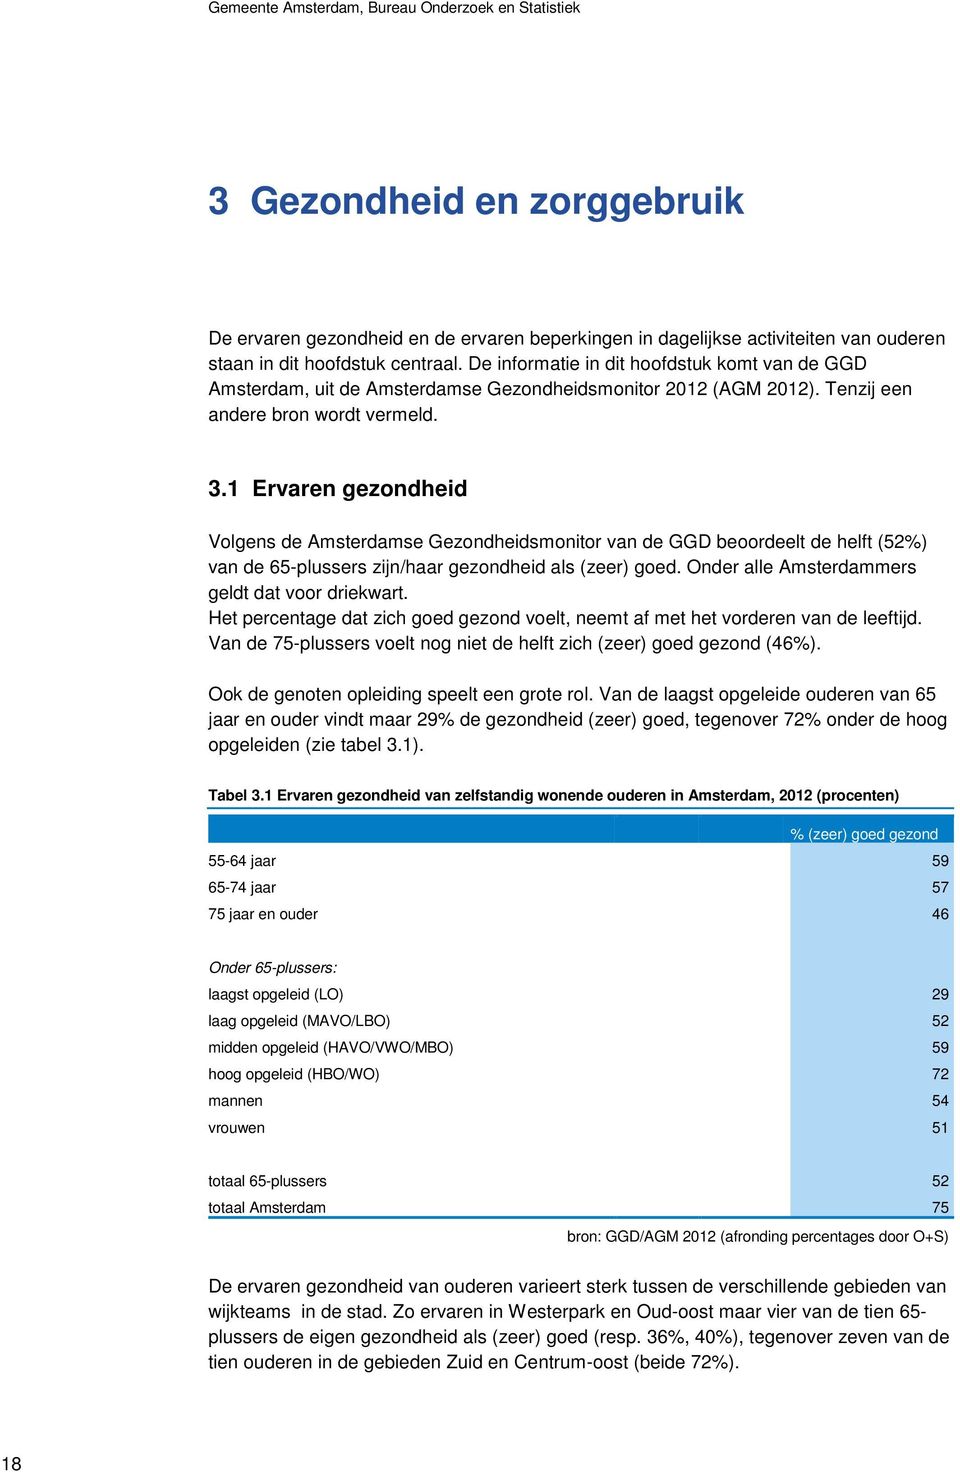 1 Ervaren gezondheid Volgens de Amsterdamse Gezondheidsmonitor van de GGD beoordeelt de helft (52%) van de 65-plussers zijn/haar gezondheid als (zeer) goed.